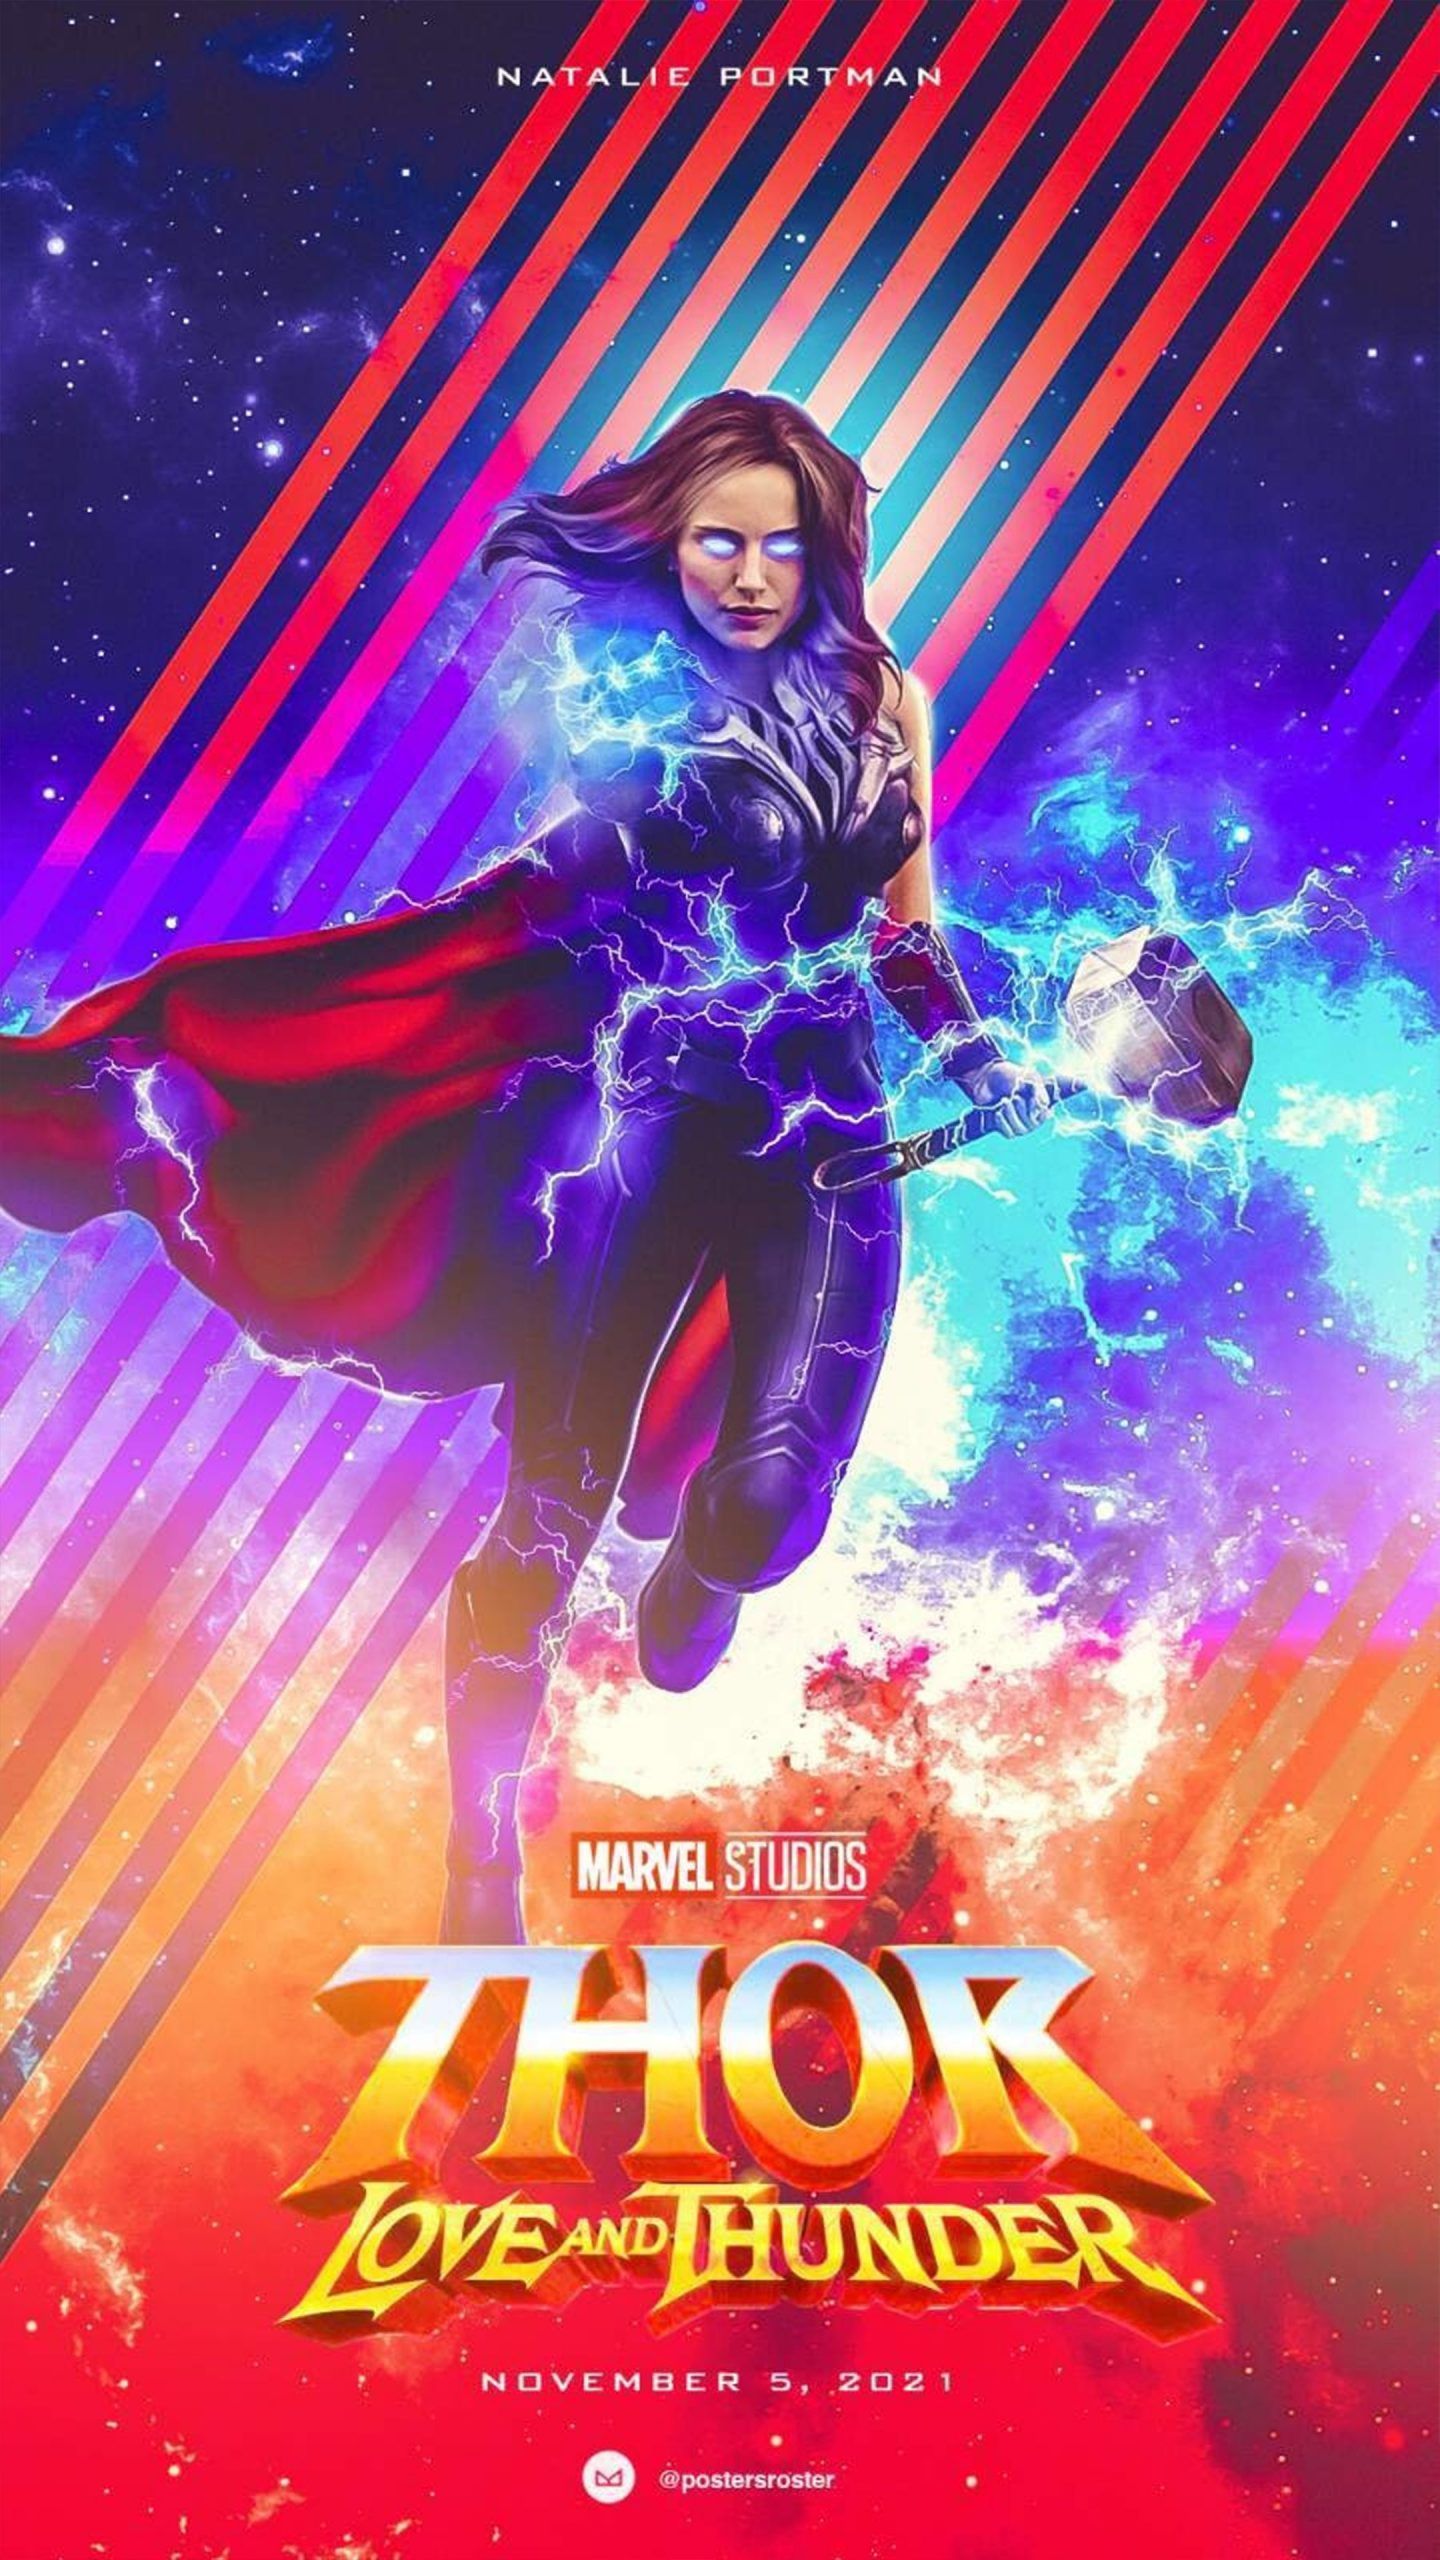 Natalie Portman As Goddess of Thunder In Thor Love And Thunder 4K Ultra HD Mobile Wallpaper. Movie wallpaper, Thor, Thor wallpaper